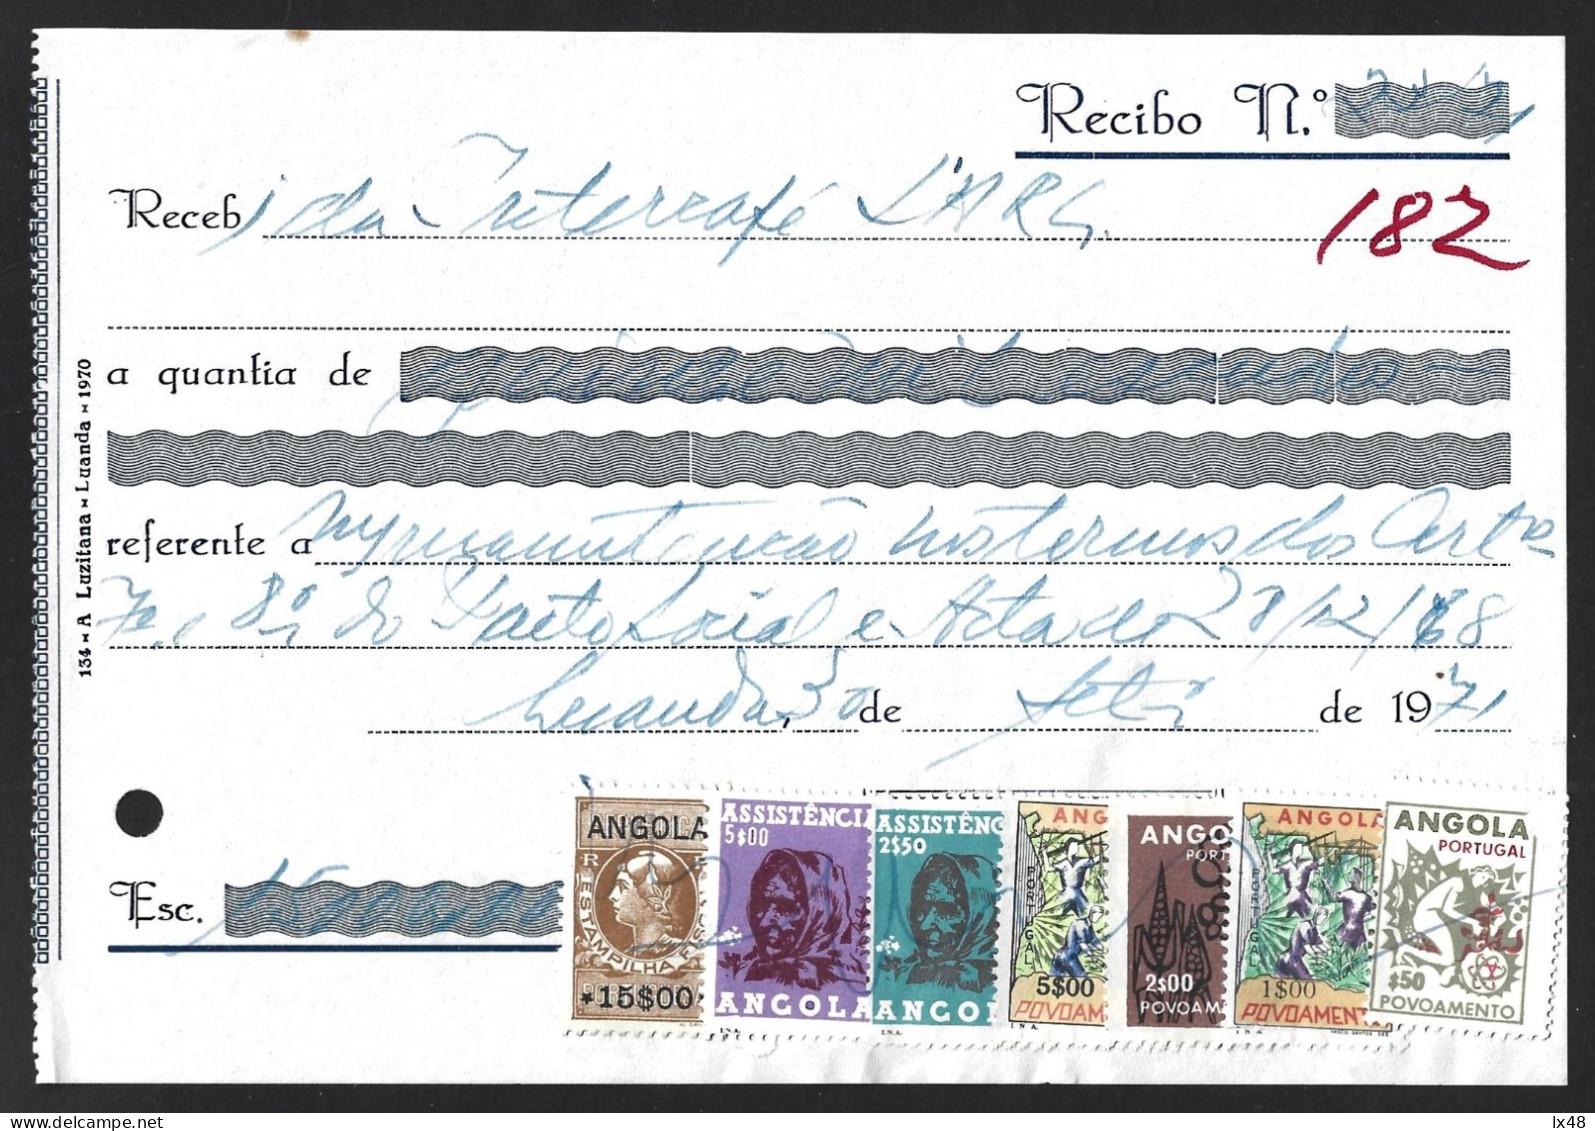 Recibo Emitido Em Luanda 1971 Com Stamp Fiscal 15$00 E 6 Stamps De Correio Usados Como Fiscais Da Assistência E Povoamen - Storia Postale